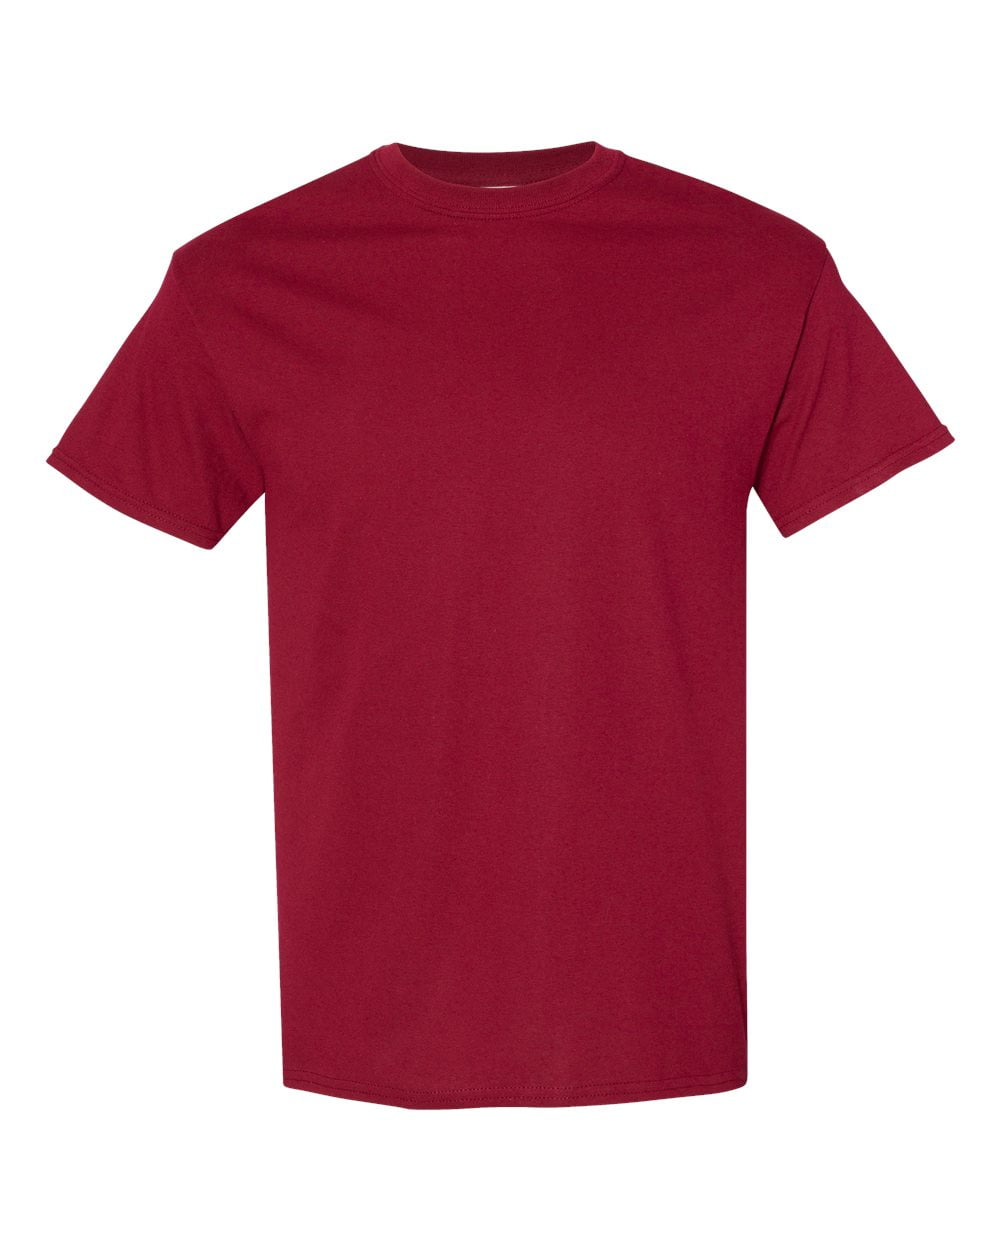 Garnet Cotton 4X-Large T-Shirt Color Colors Size Multi Men Heavy